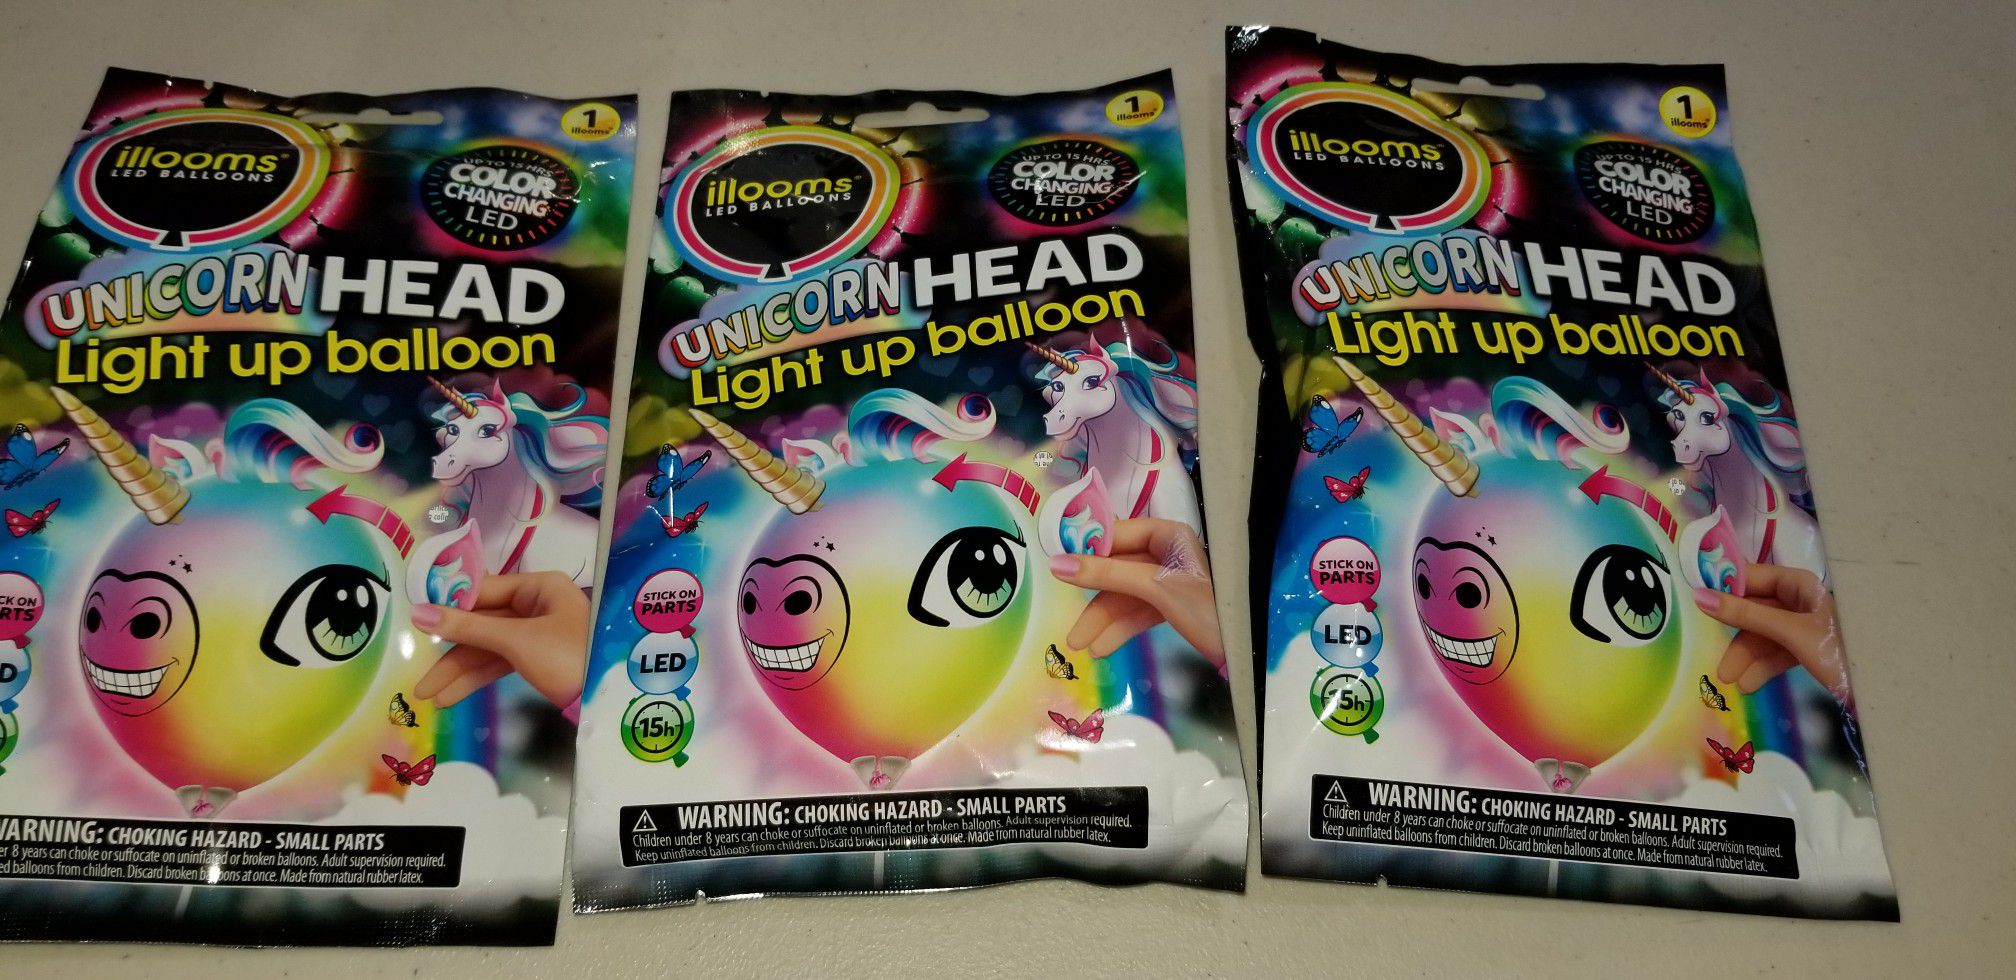 New illooms unicorn head light up balloons 3 total